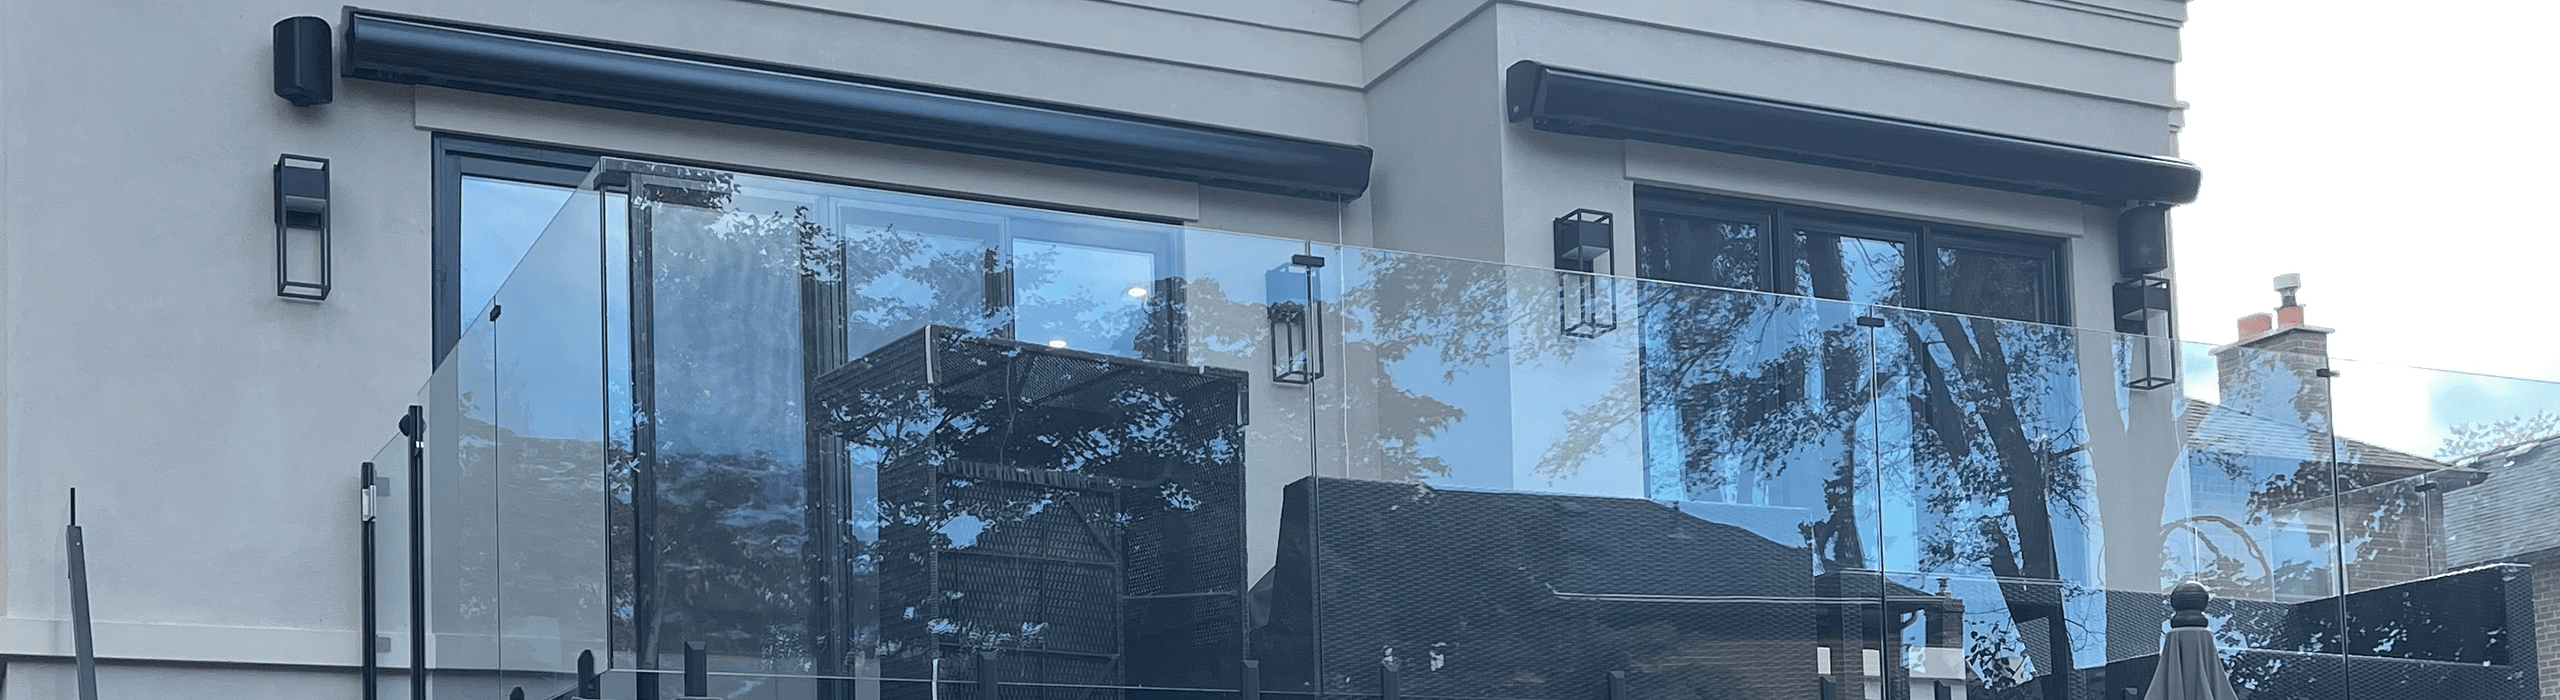 Glass Doors for Indoor-Outdoor Living